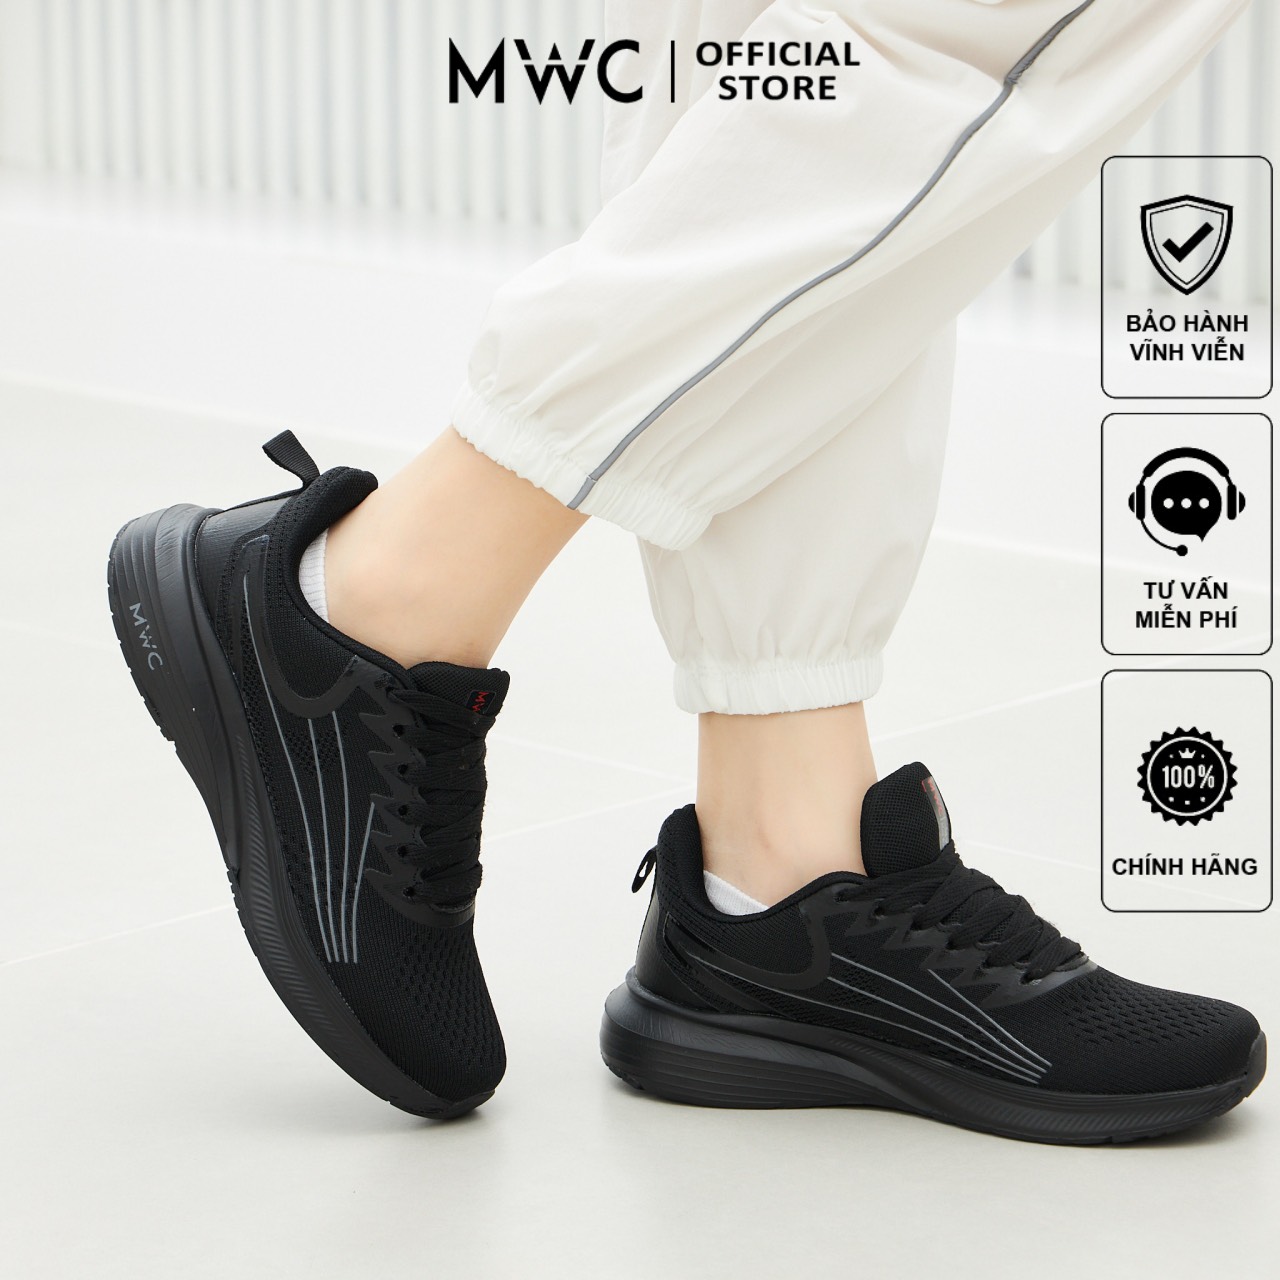 Giày Thể Thao Nữ MWC W799 - Thể Thao Nữ Chất Liệu Vải Dệt Êm Mềm Thoáng Khí